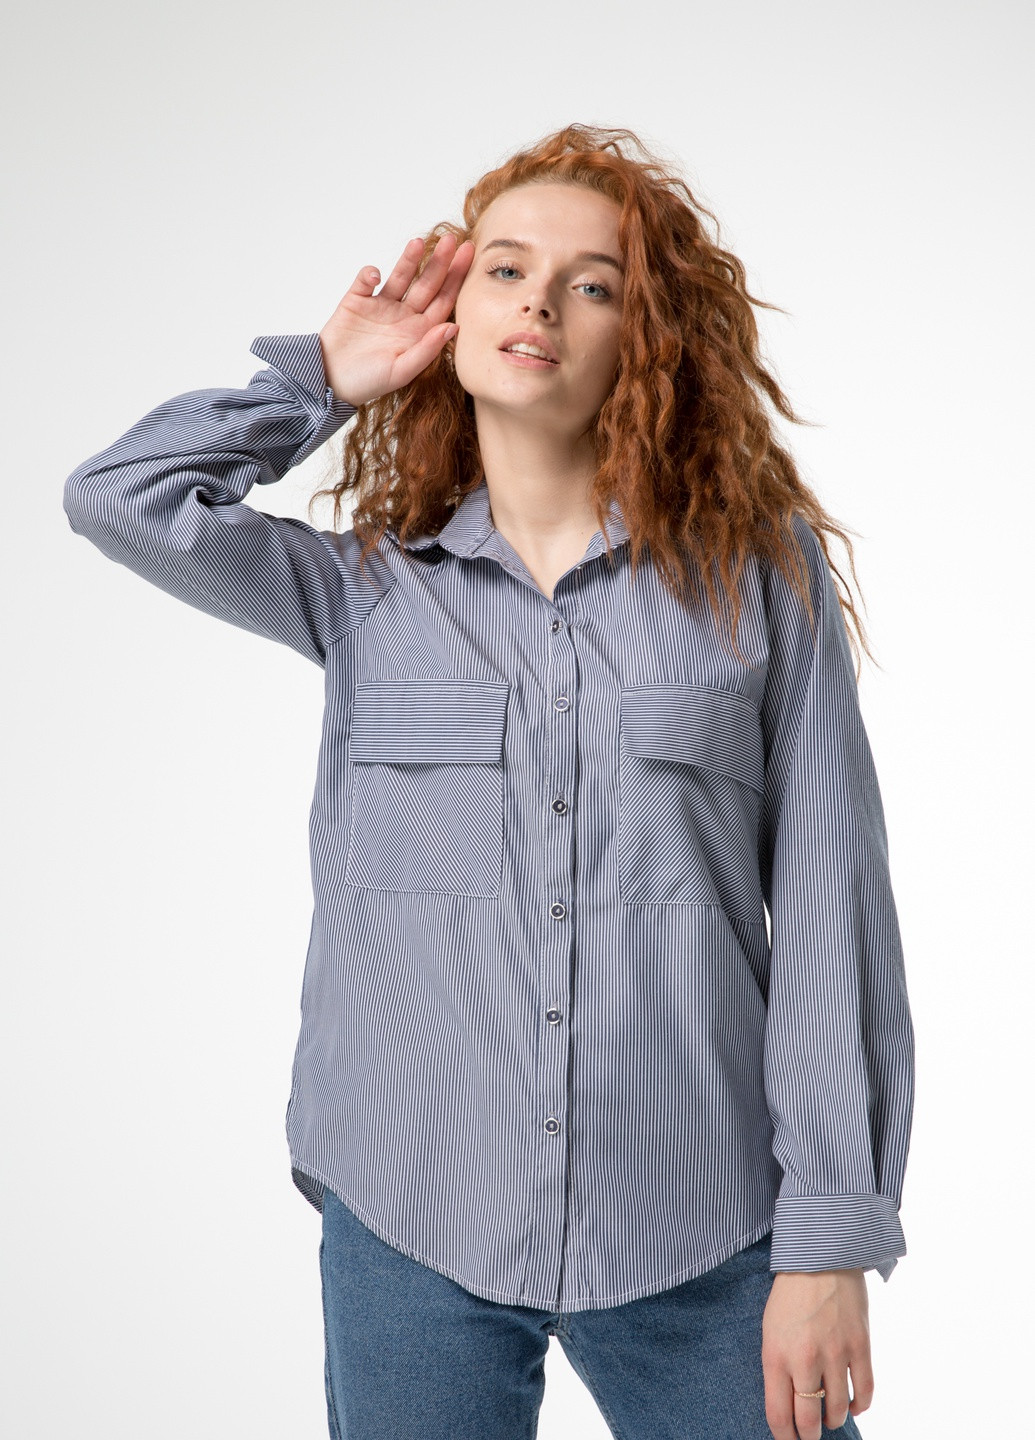 Синяя демисезонная классическая женская рубашка в мелкую полосочку INNOE Рубашка